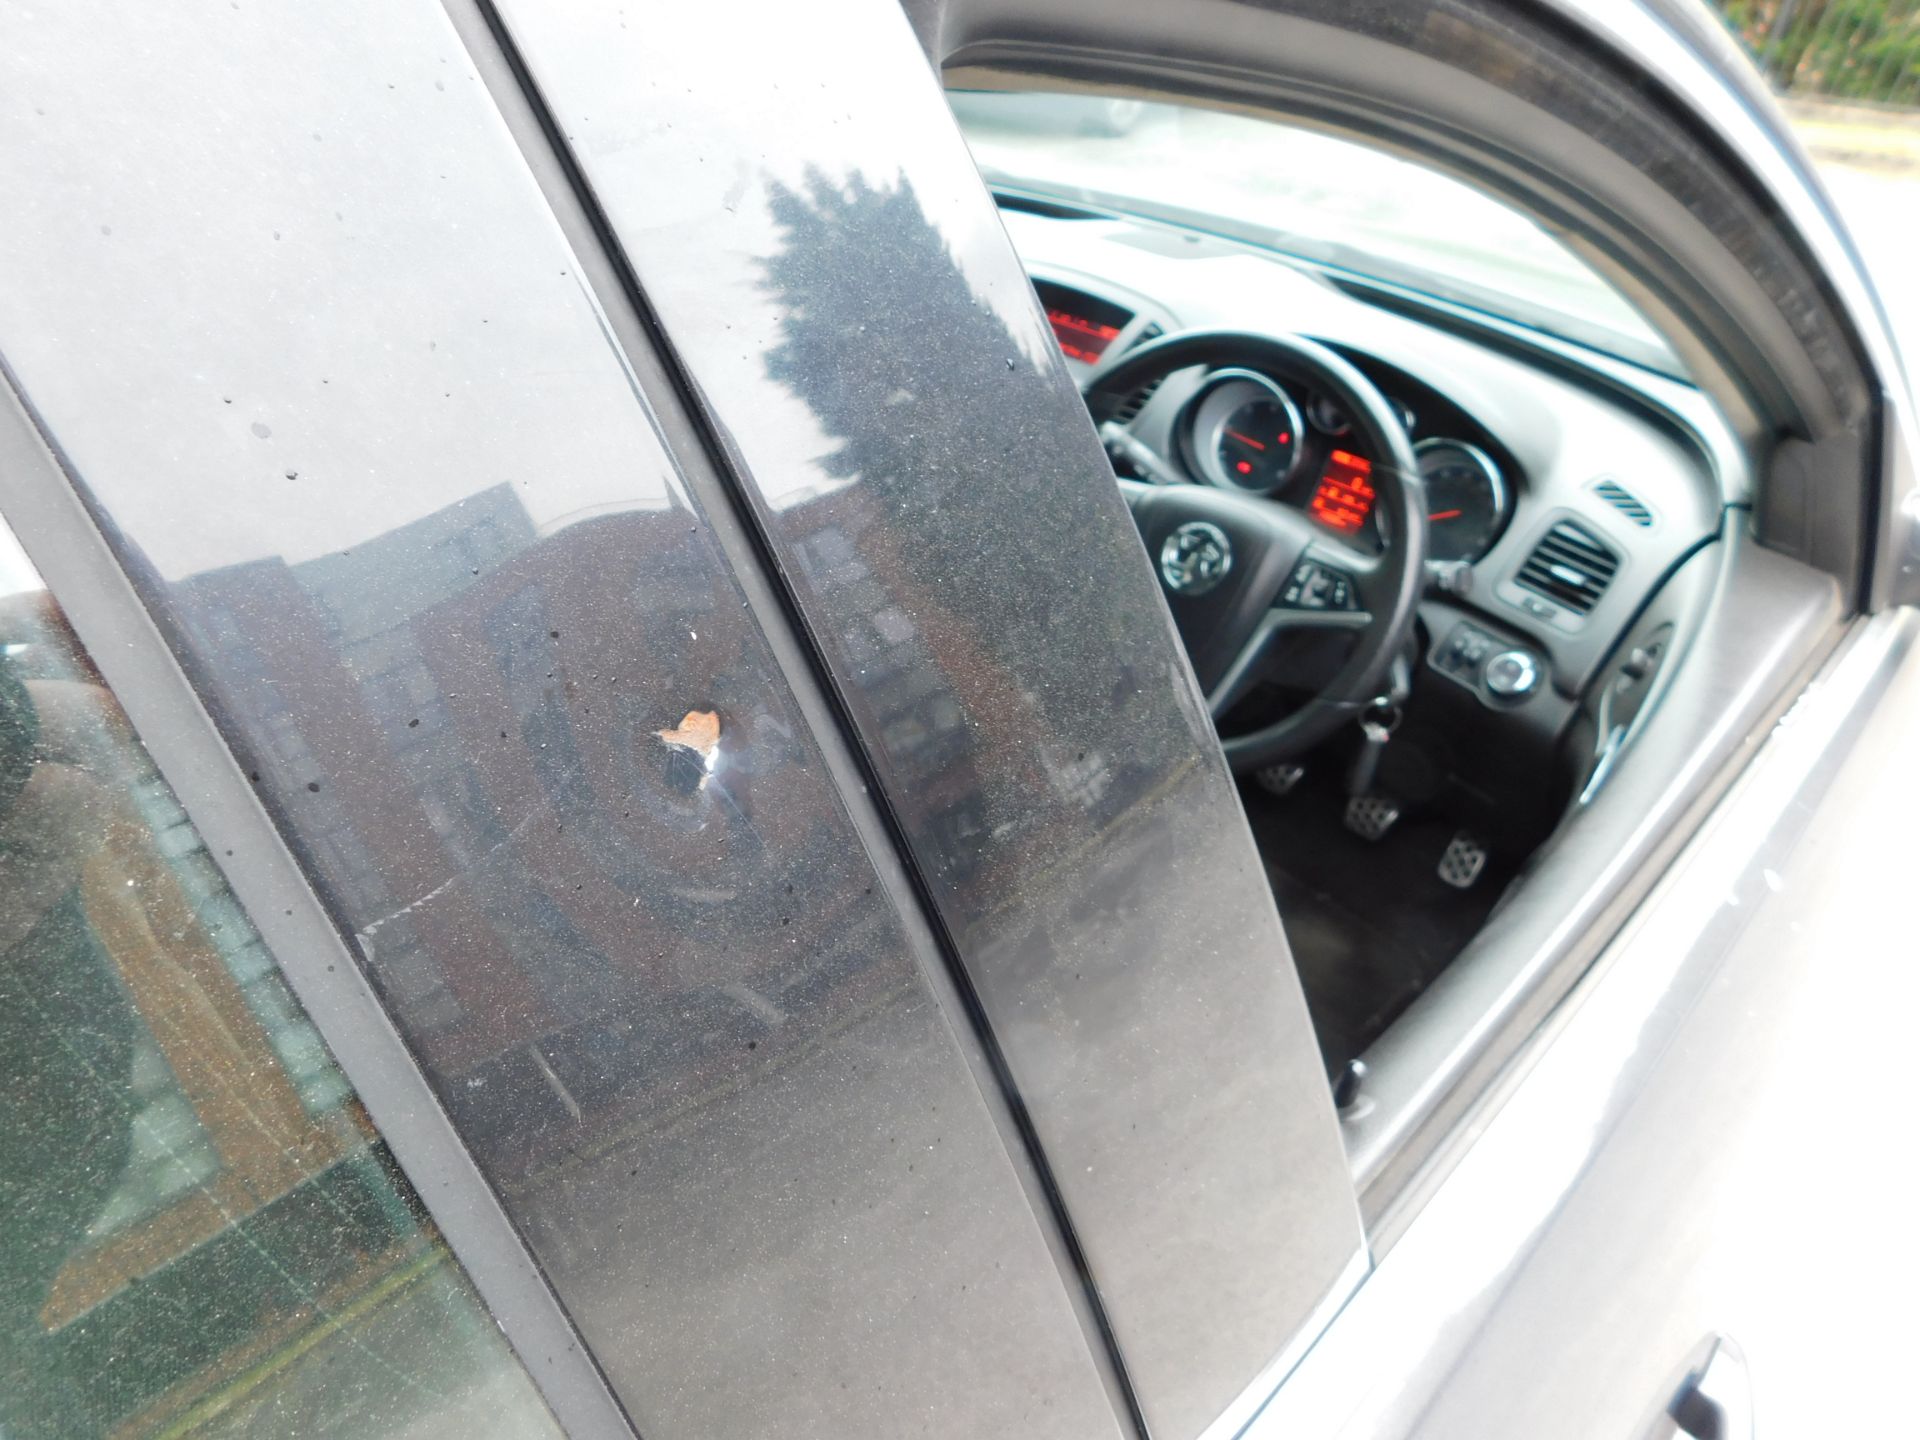 Vauxhall Insignia SRI 2.0CDTI five door hatchback, - Image 11 of 16